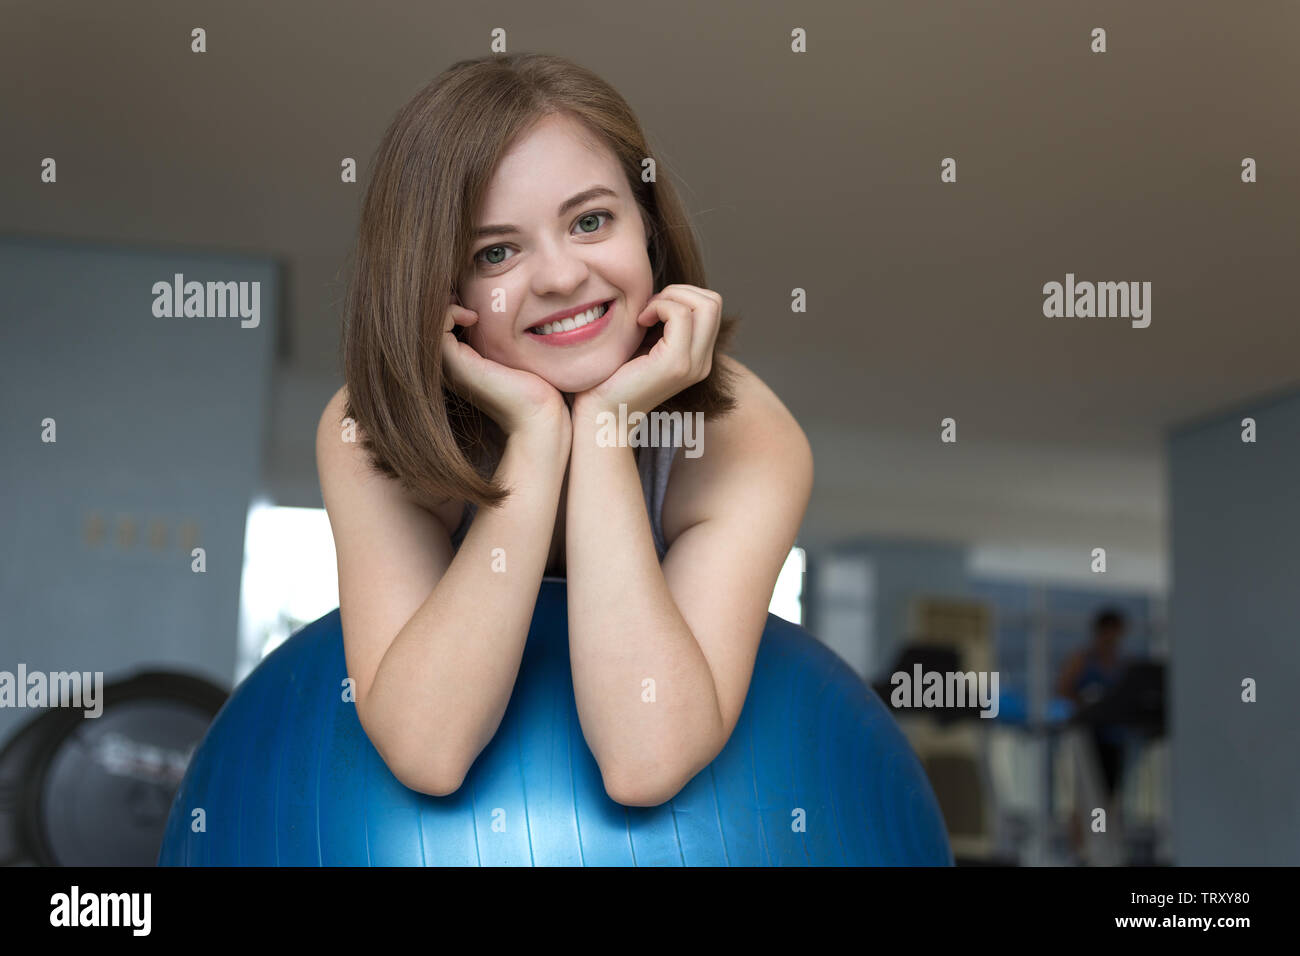 Lächelnden jungen kaukasischen Frau Mädchen auf Blau Gymnastikball im Fitnessstudio, Training oder Yoga Pilates Übung Stockfoto